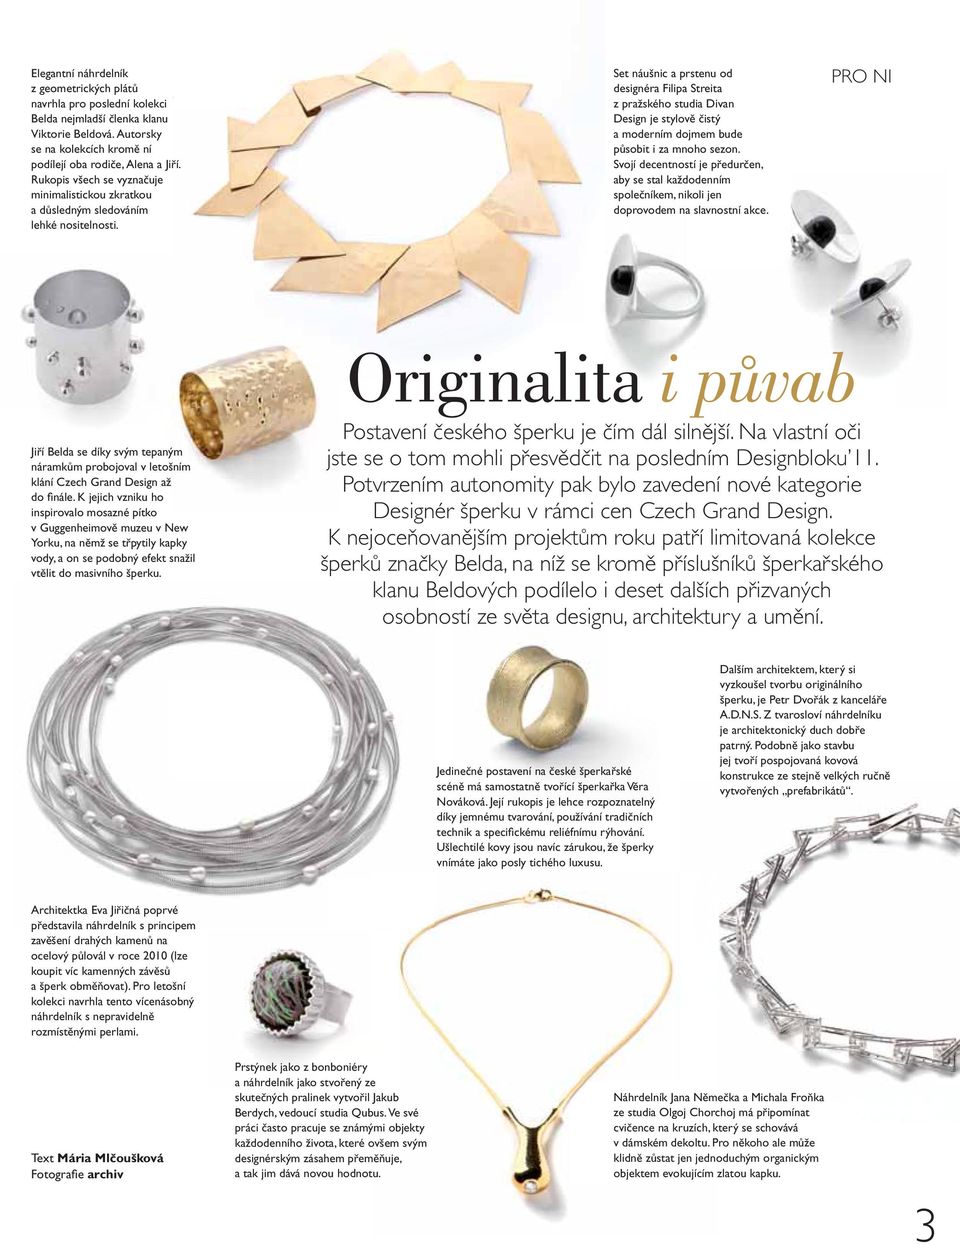 Set náušnic a prstenu od designéra Filipa Streita z pražského studia Divan Design je stylově čistý a moderním dojmem bude působit i za mnoho sezon.